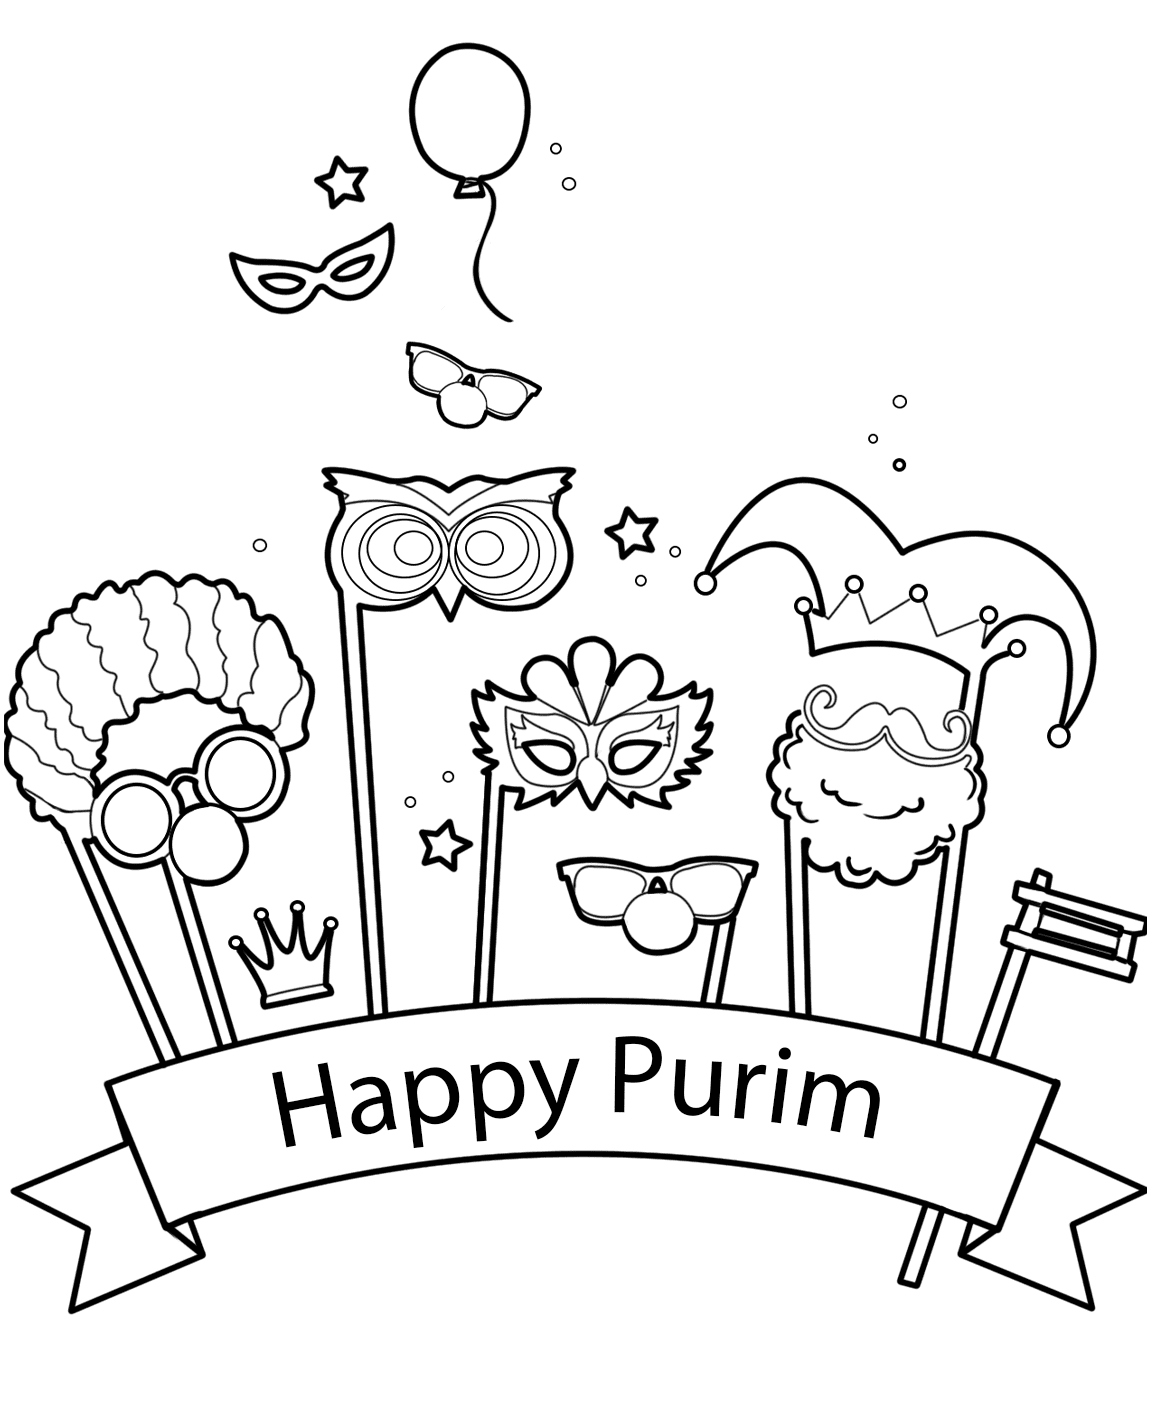 Frohes Purim zum Ausdrucken von Purim